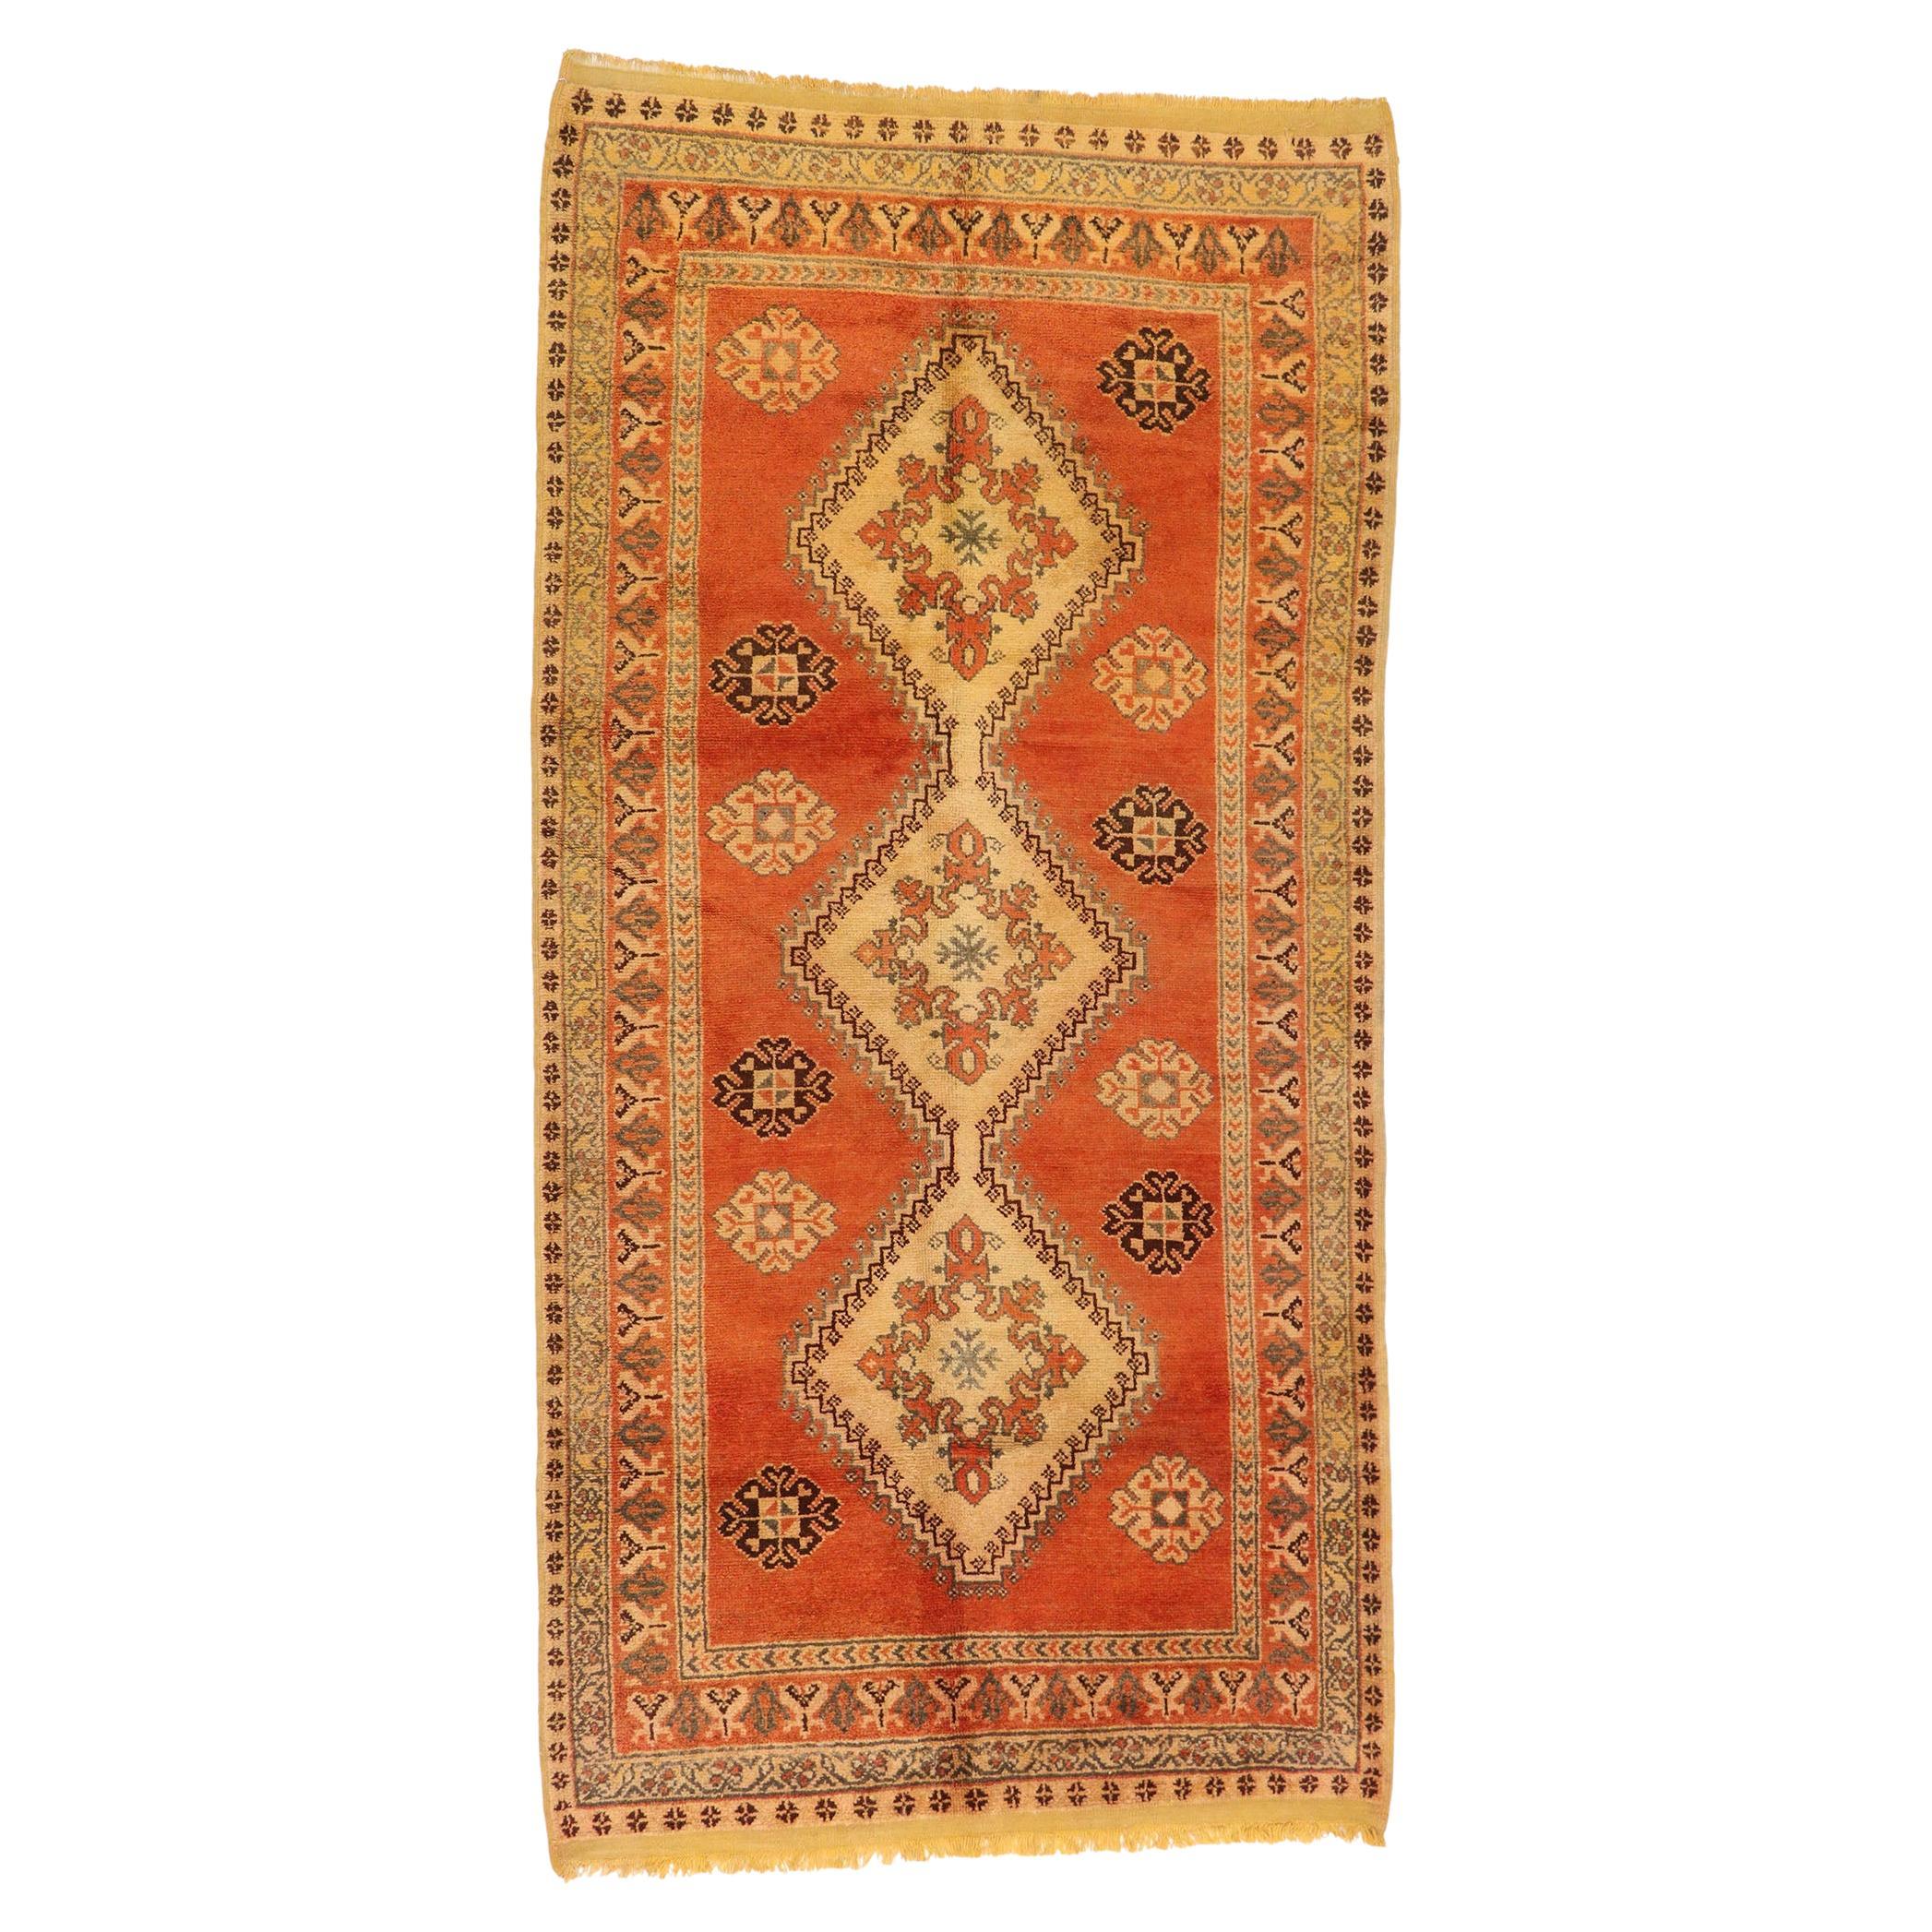 Marokkanischer Berber-Teppich im Vintage-Stil, Nomadic Charm Meets Pacific Northwest